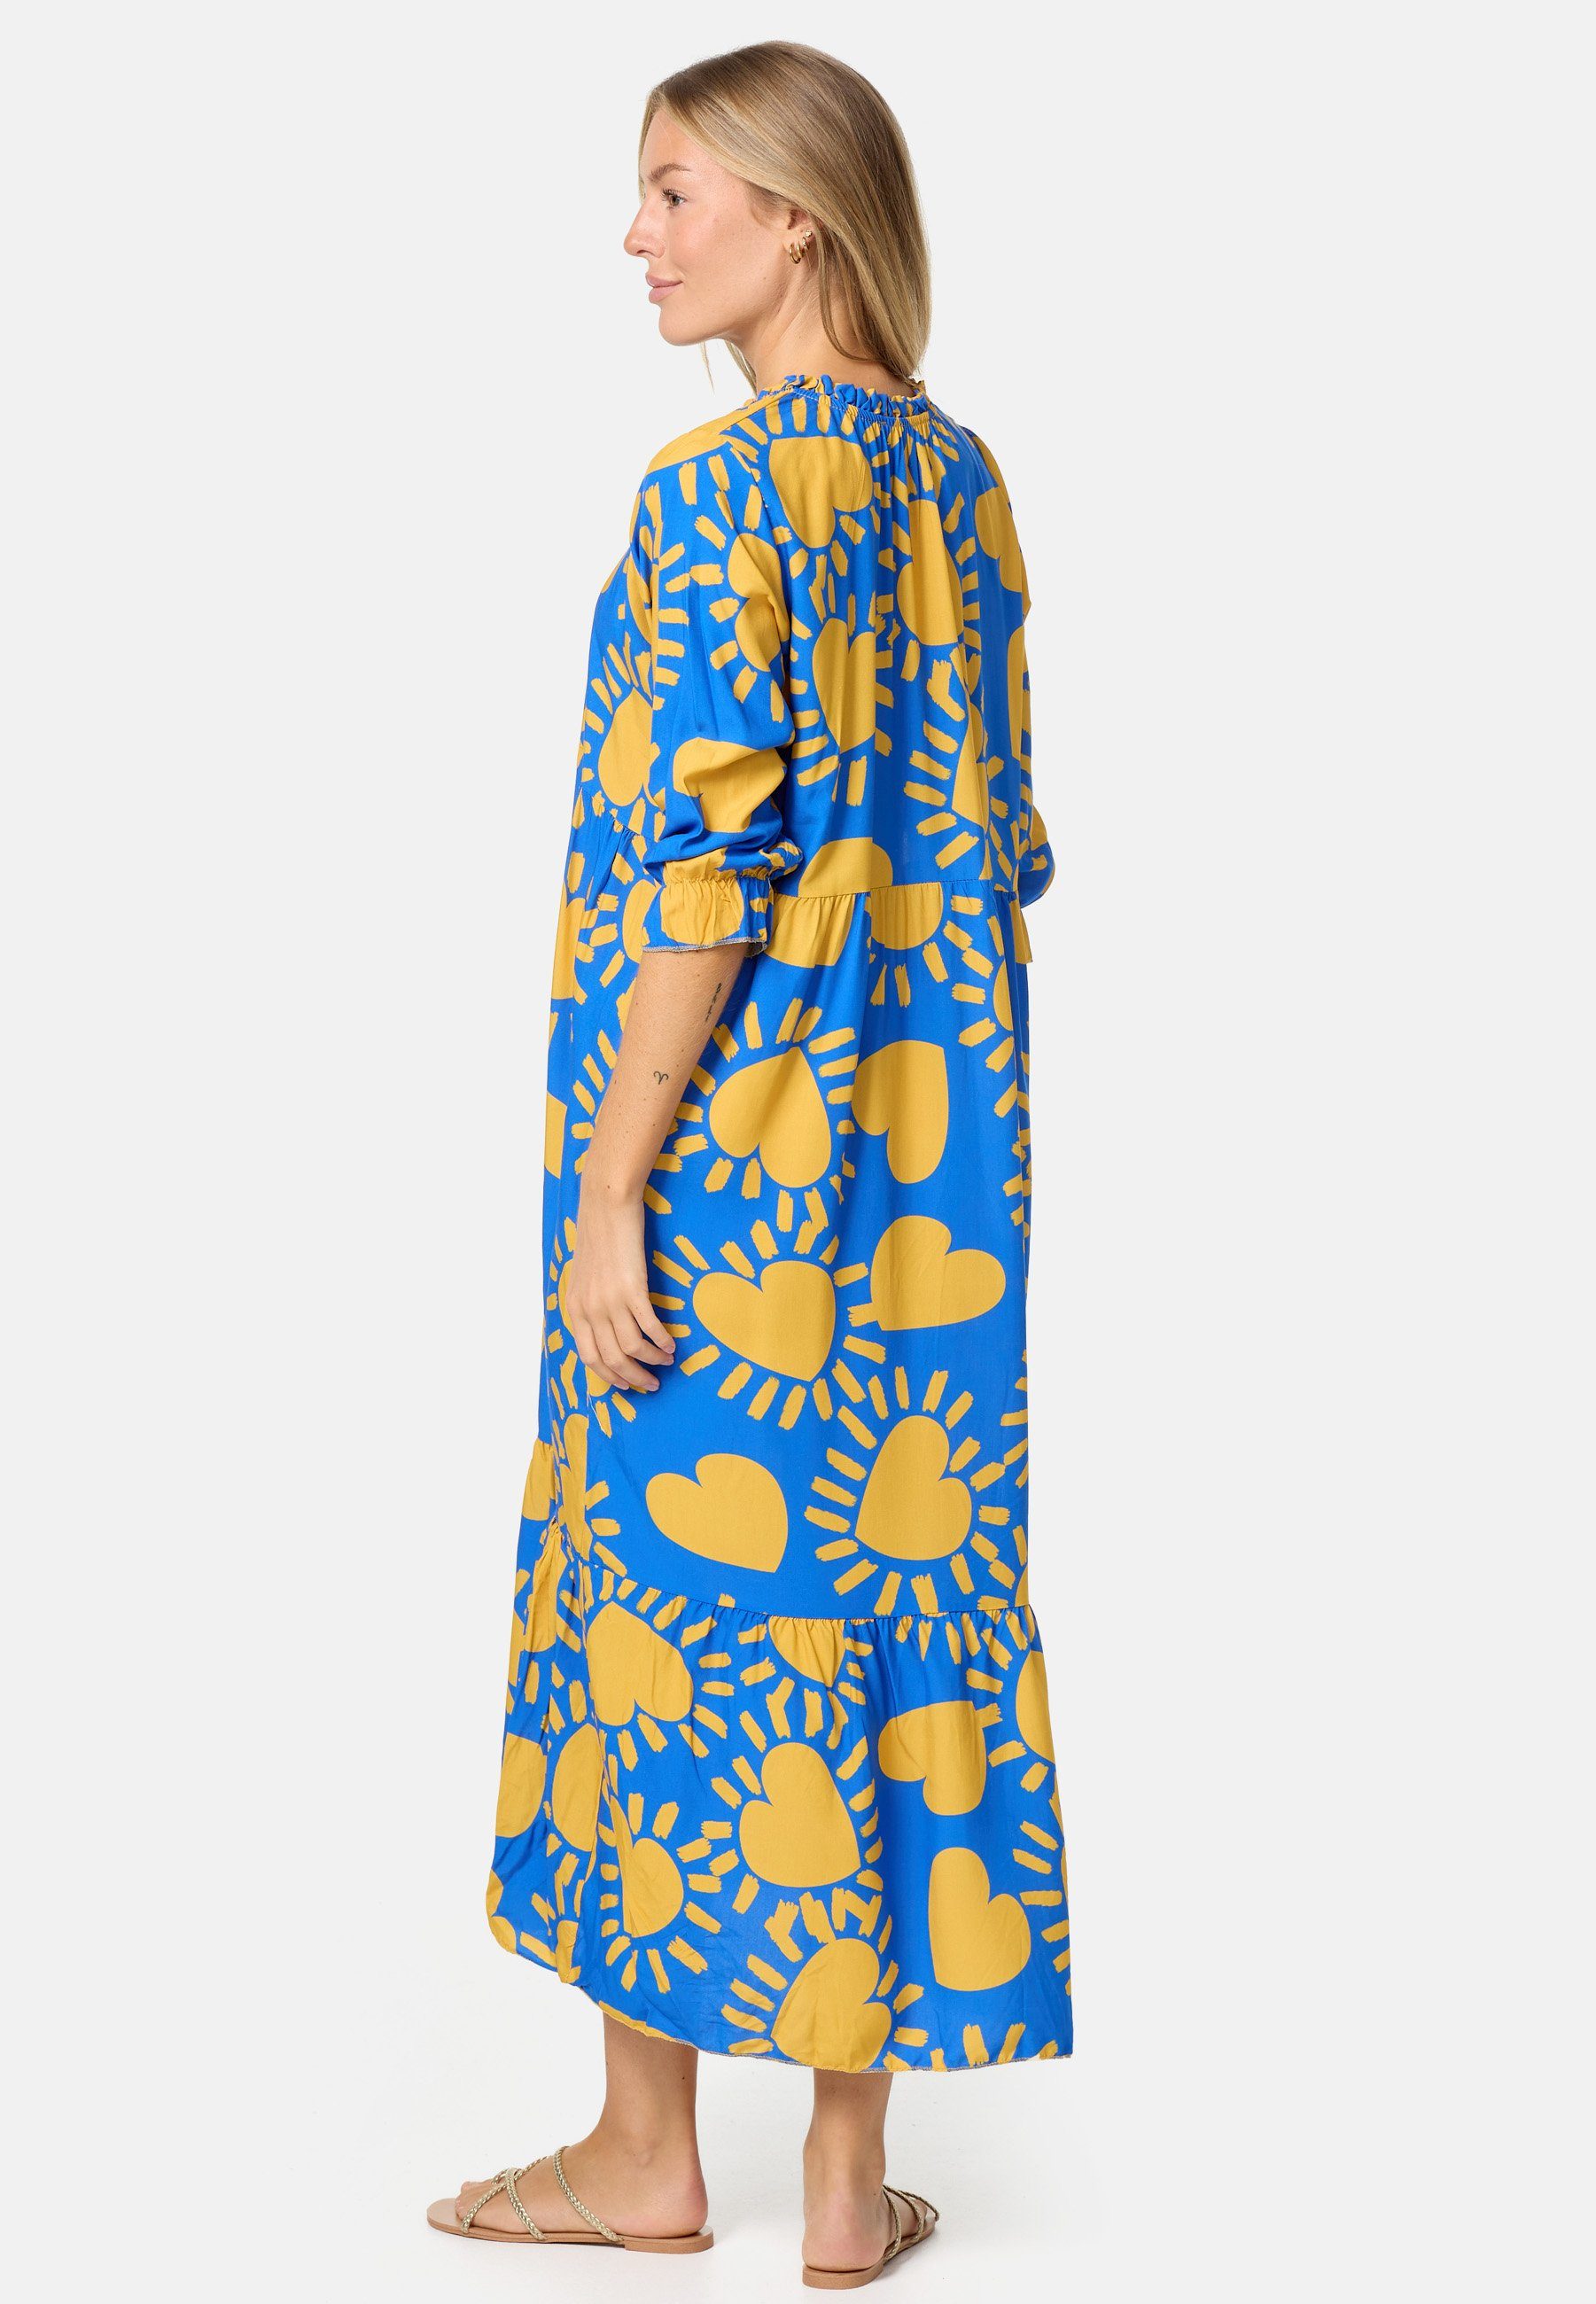 (Sommerkleid Einheitsgröße) in Blau PM PM-32 SELECTED Muster Strandkleid mit Jersey Maxikleid